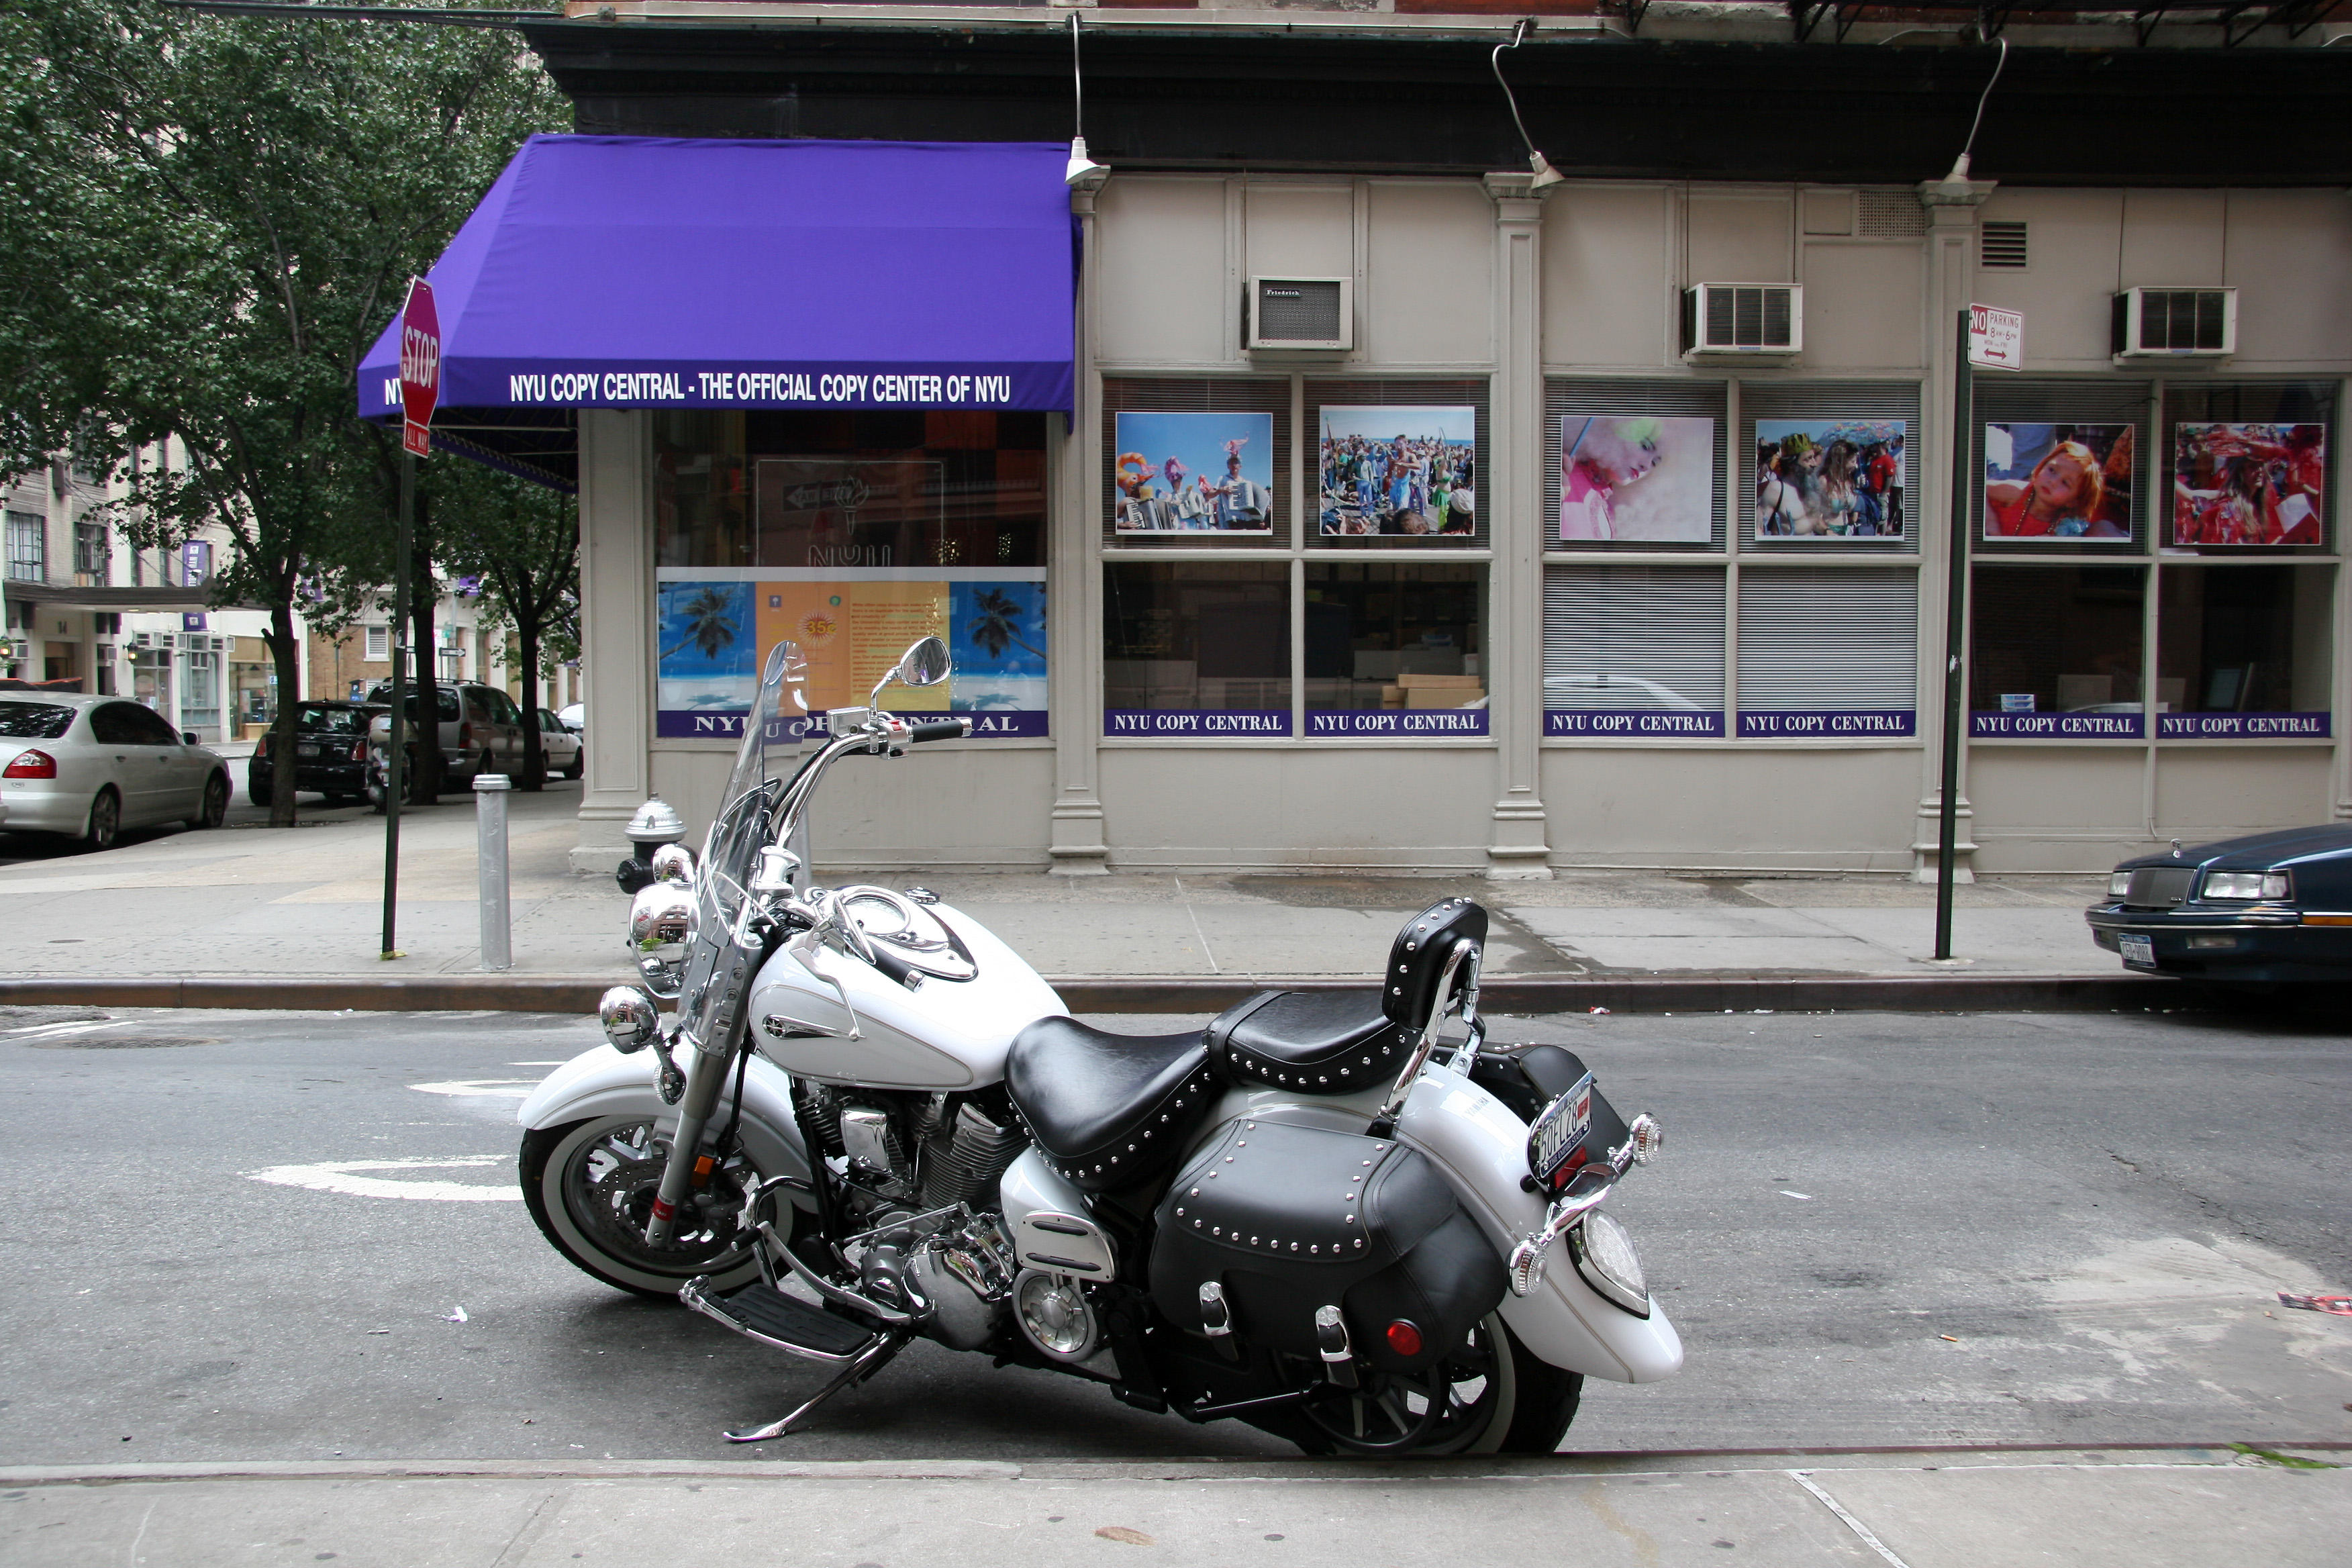 Motorcycle at NYU Copy Center